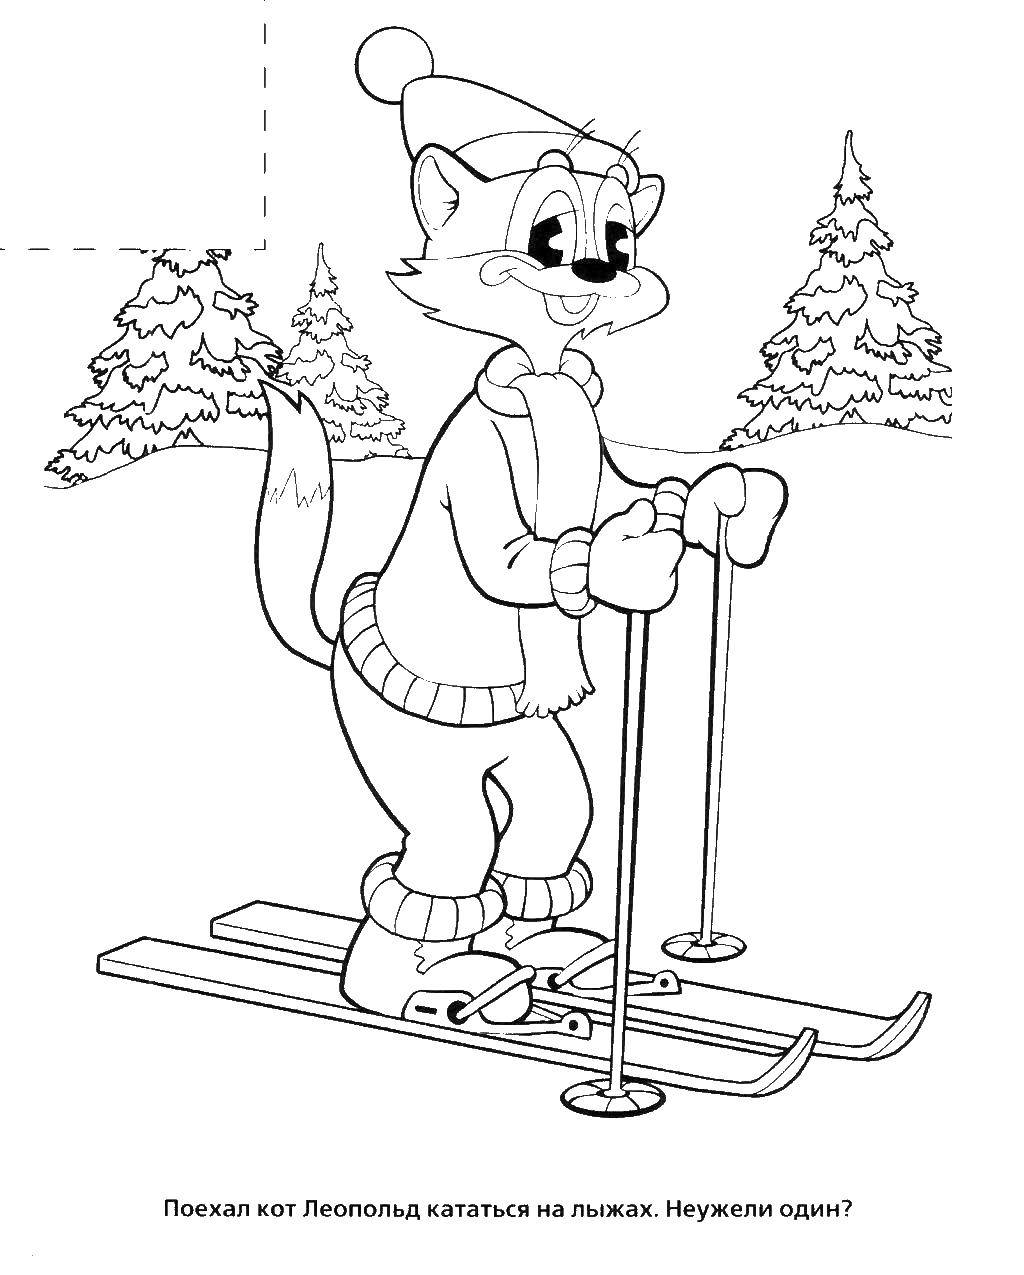  Кот леопольд катается на лыжах